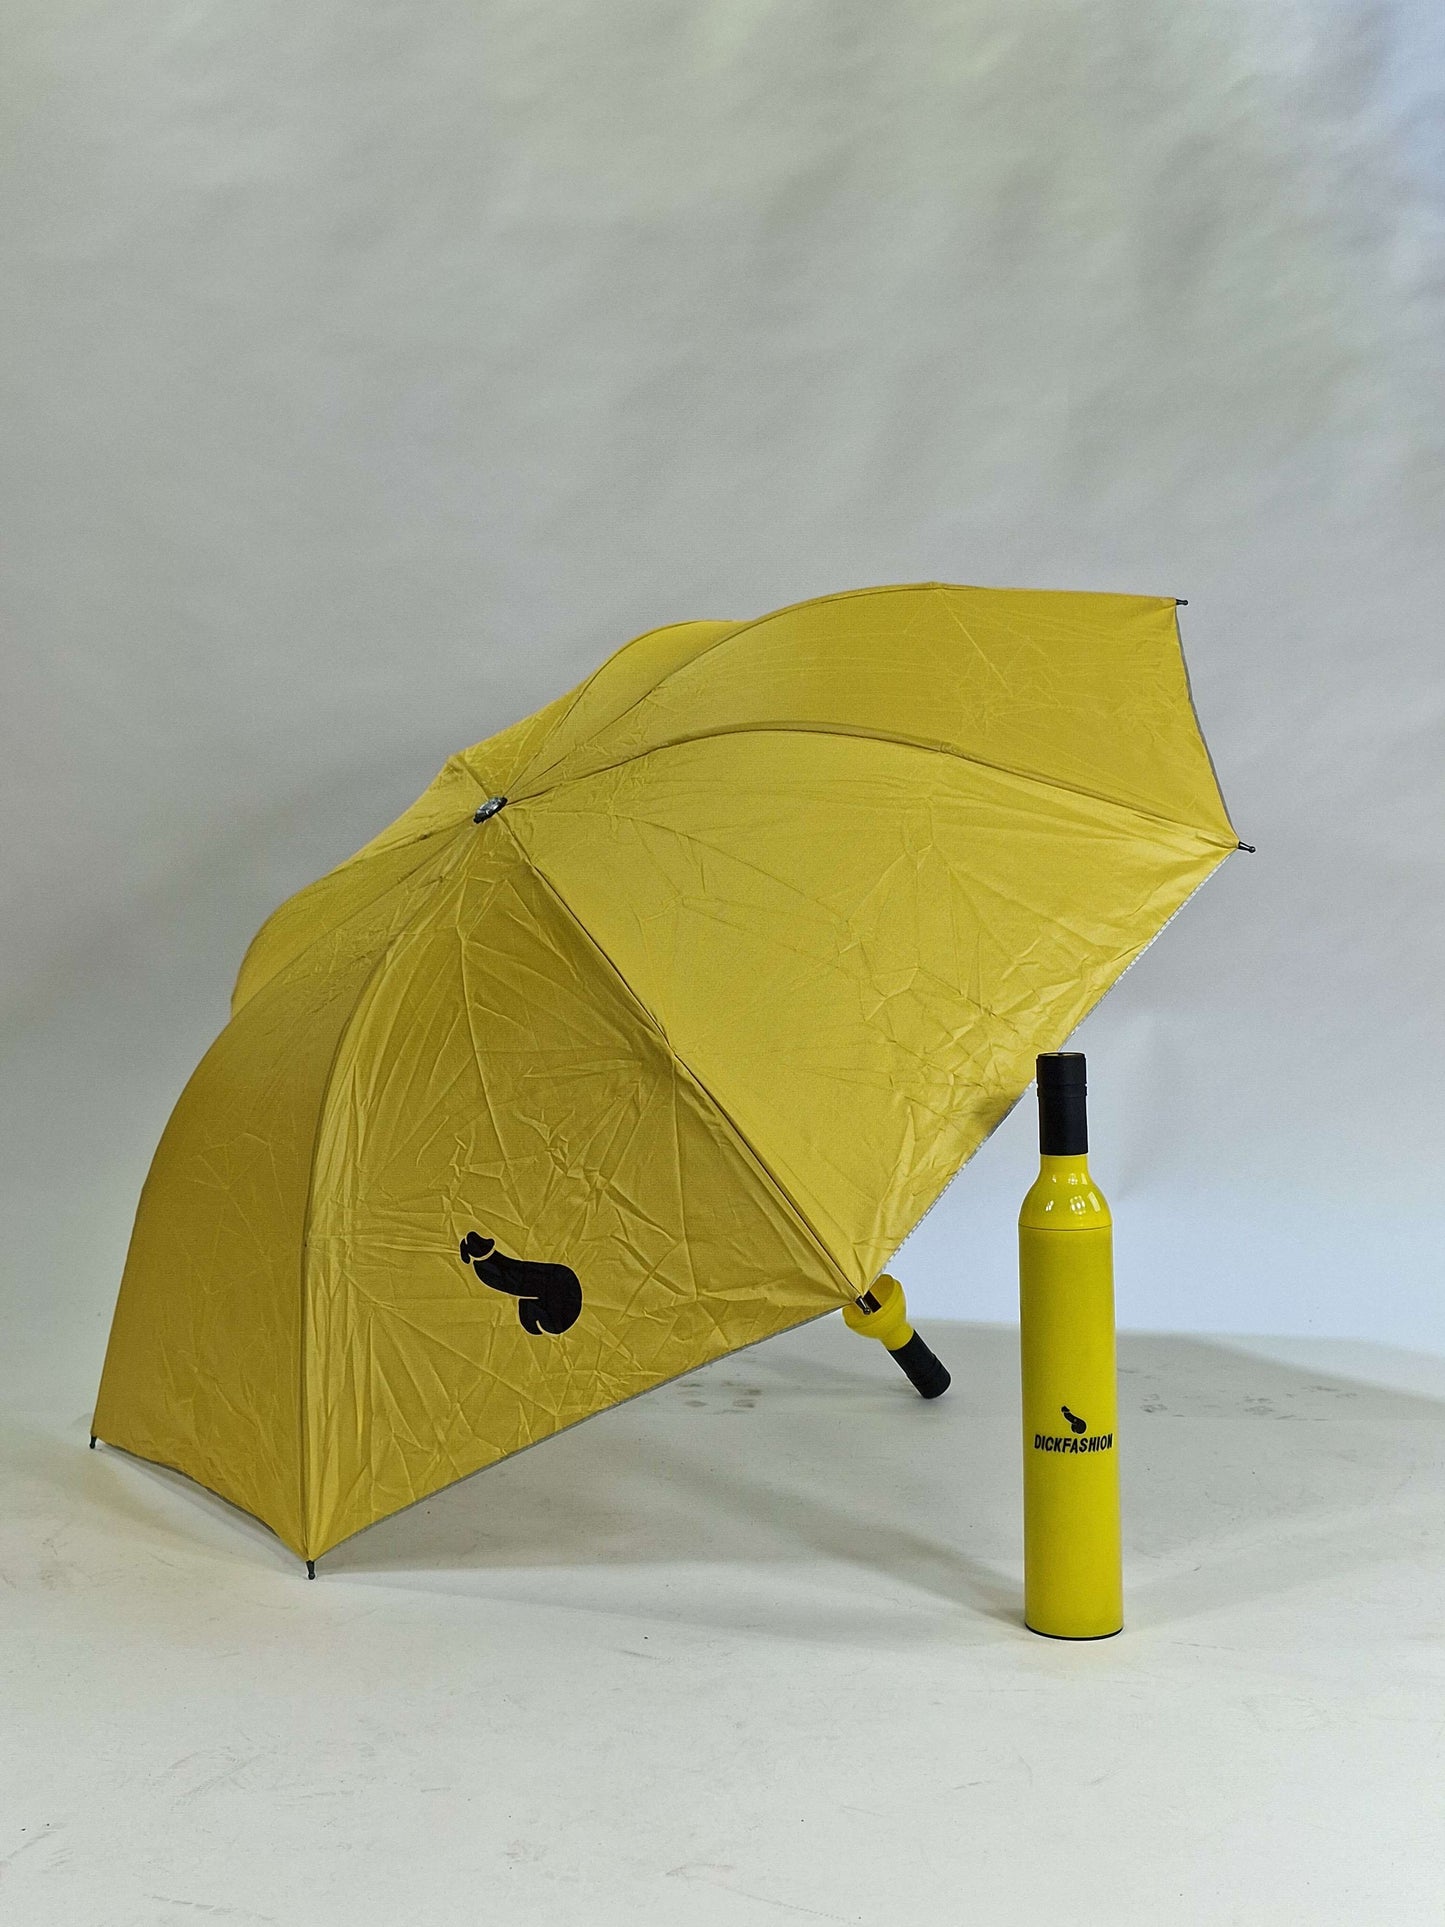 Roligt, elegant och prisvärt blått paraply i hög kvalité